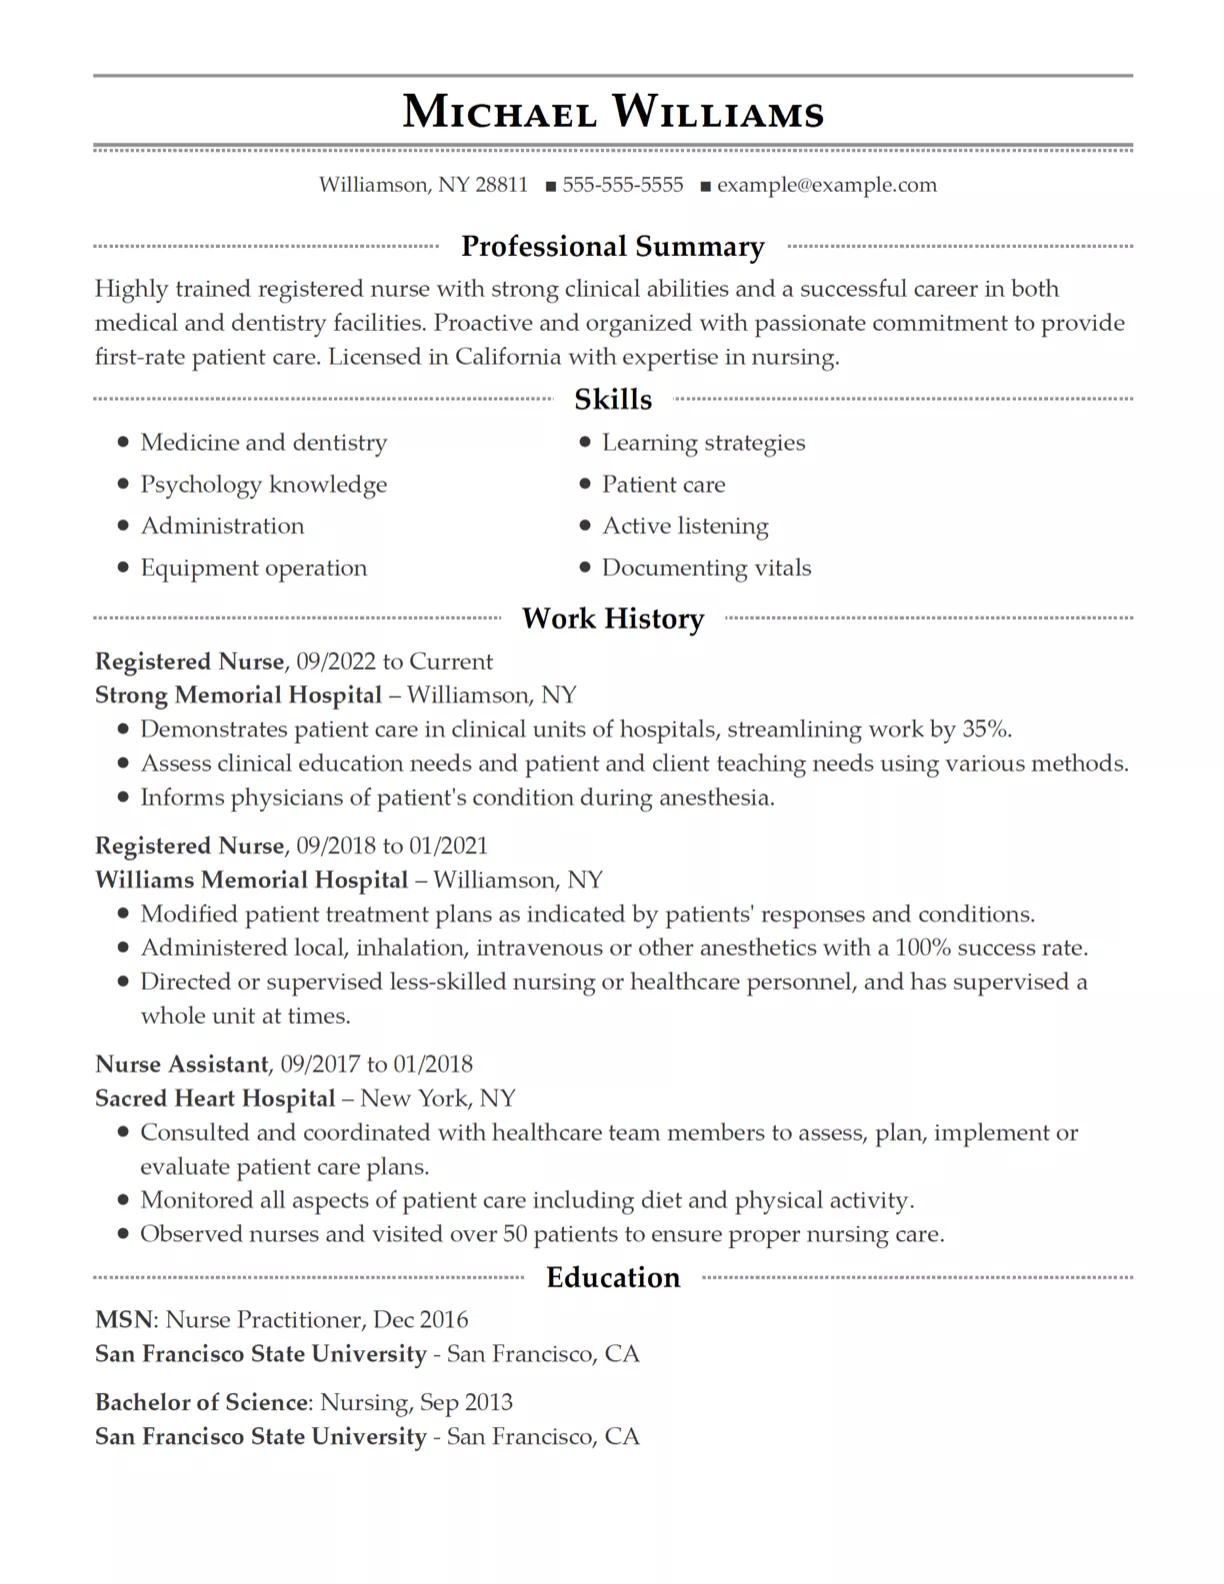 Resume design